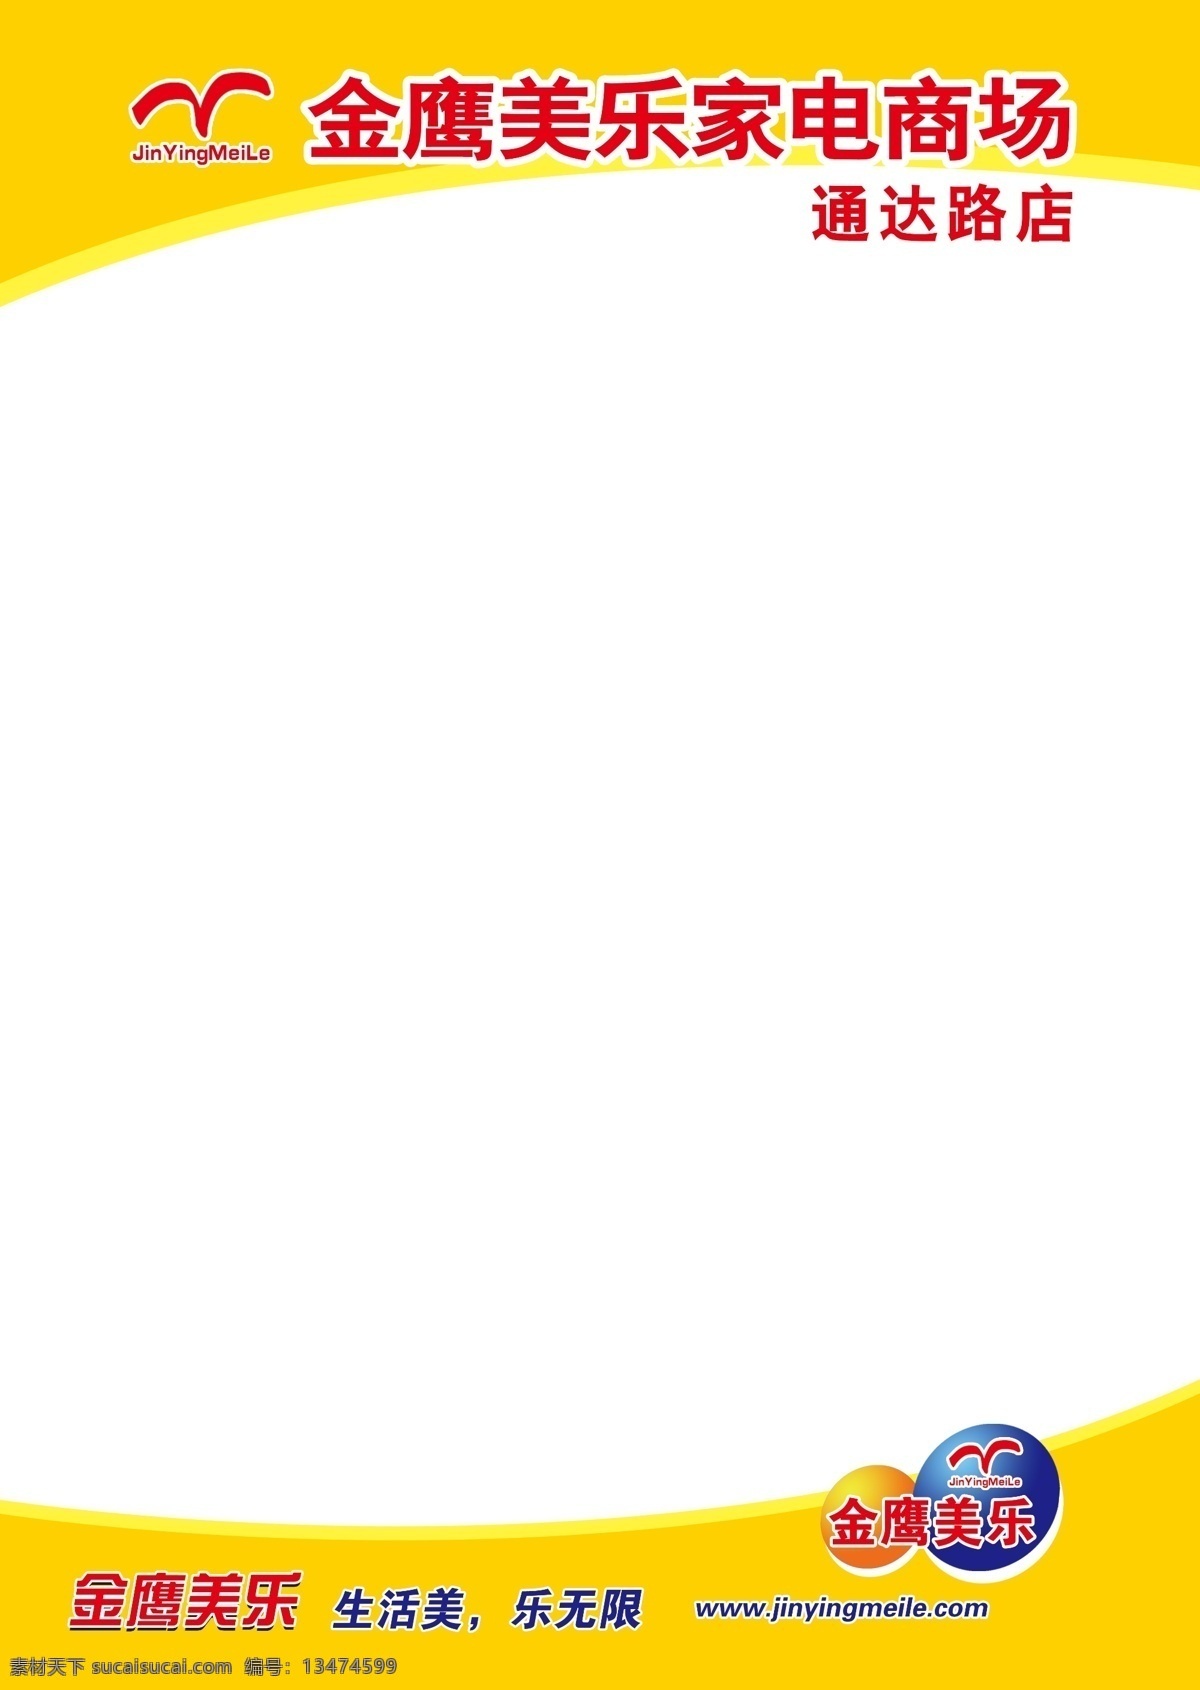 金鹰 美 乐 pop 海报 模板 黄色弧线 家电 生活美 乐无限 广告设计模板 源文件